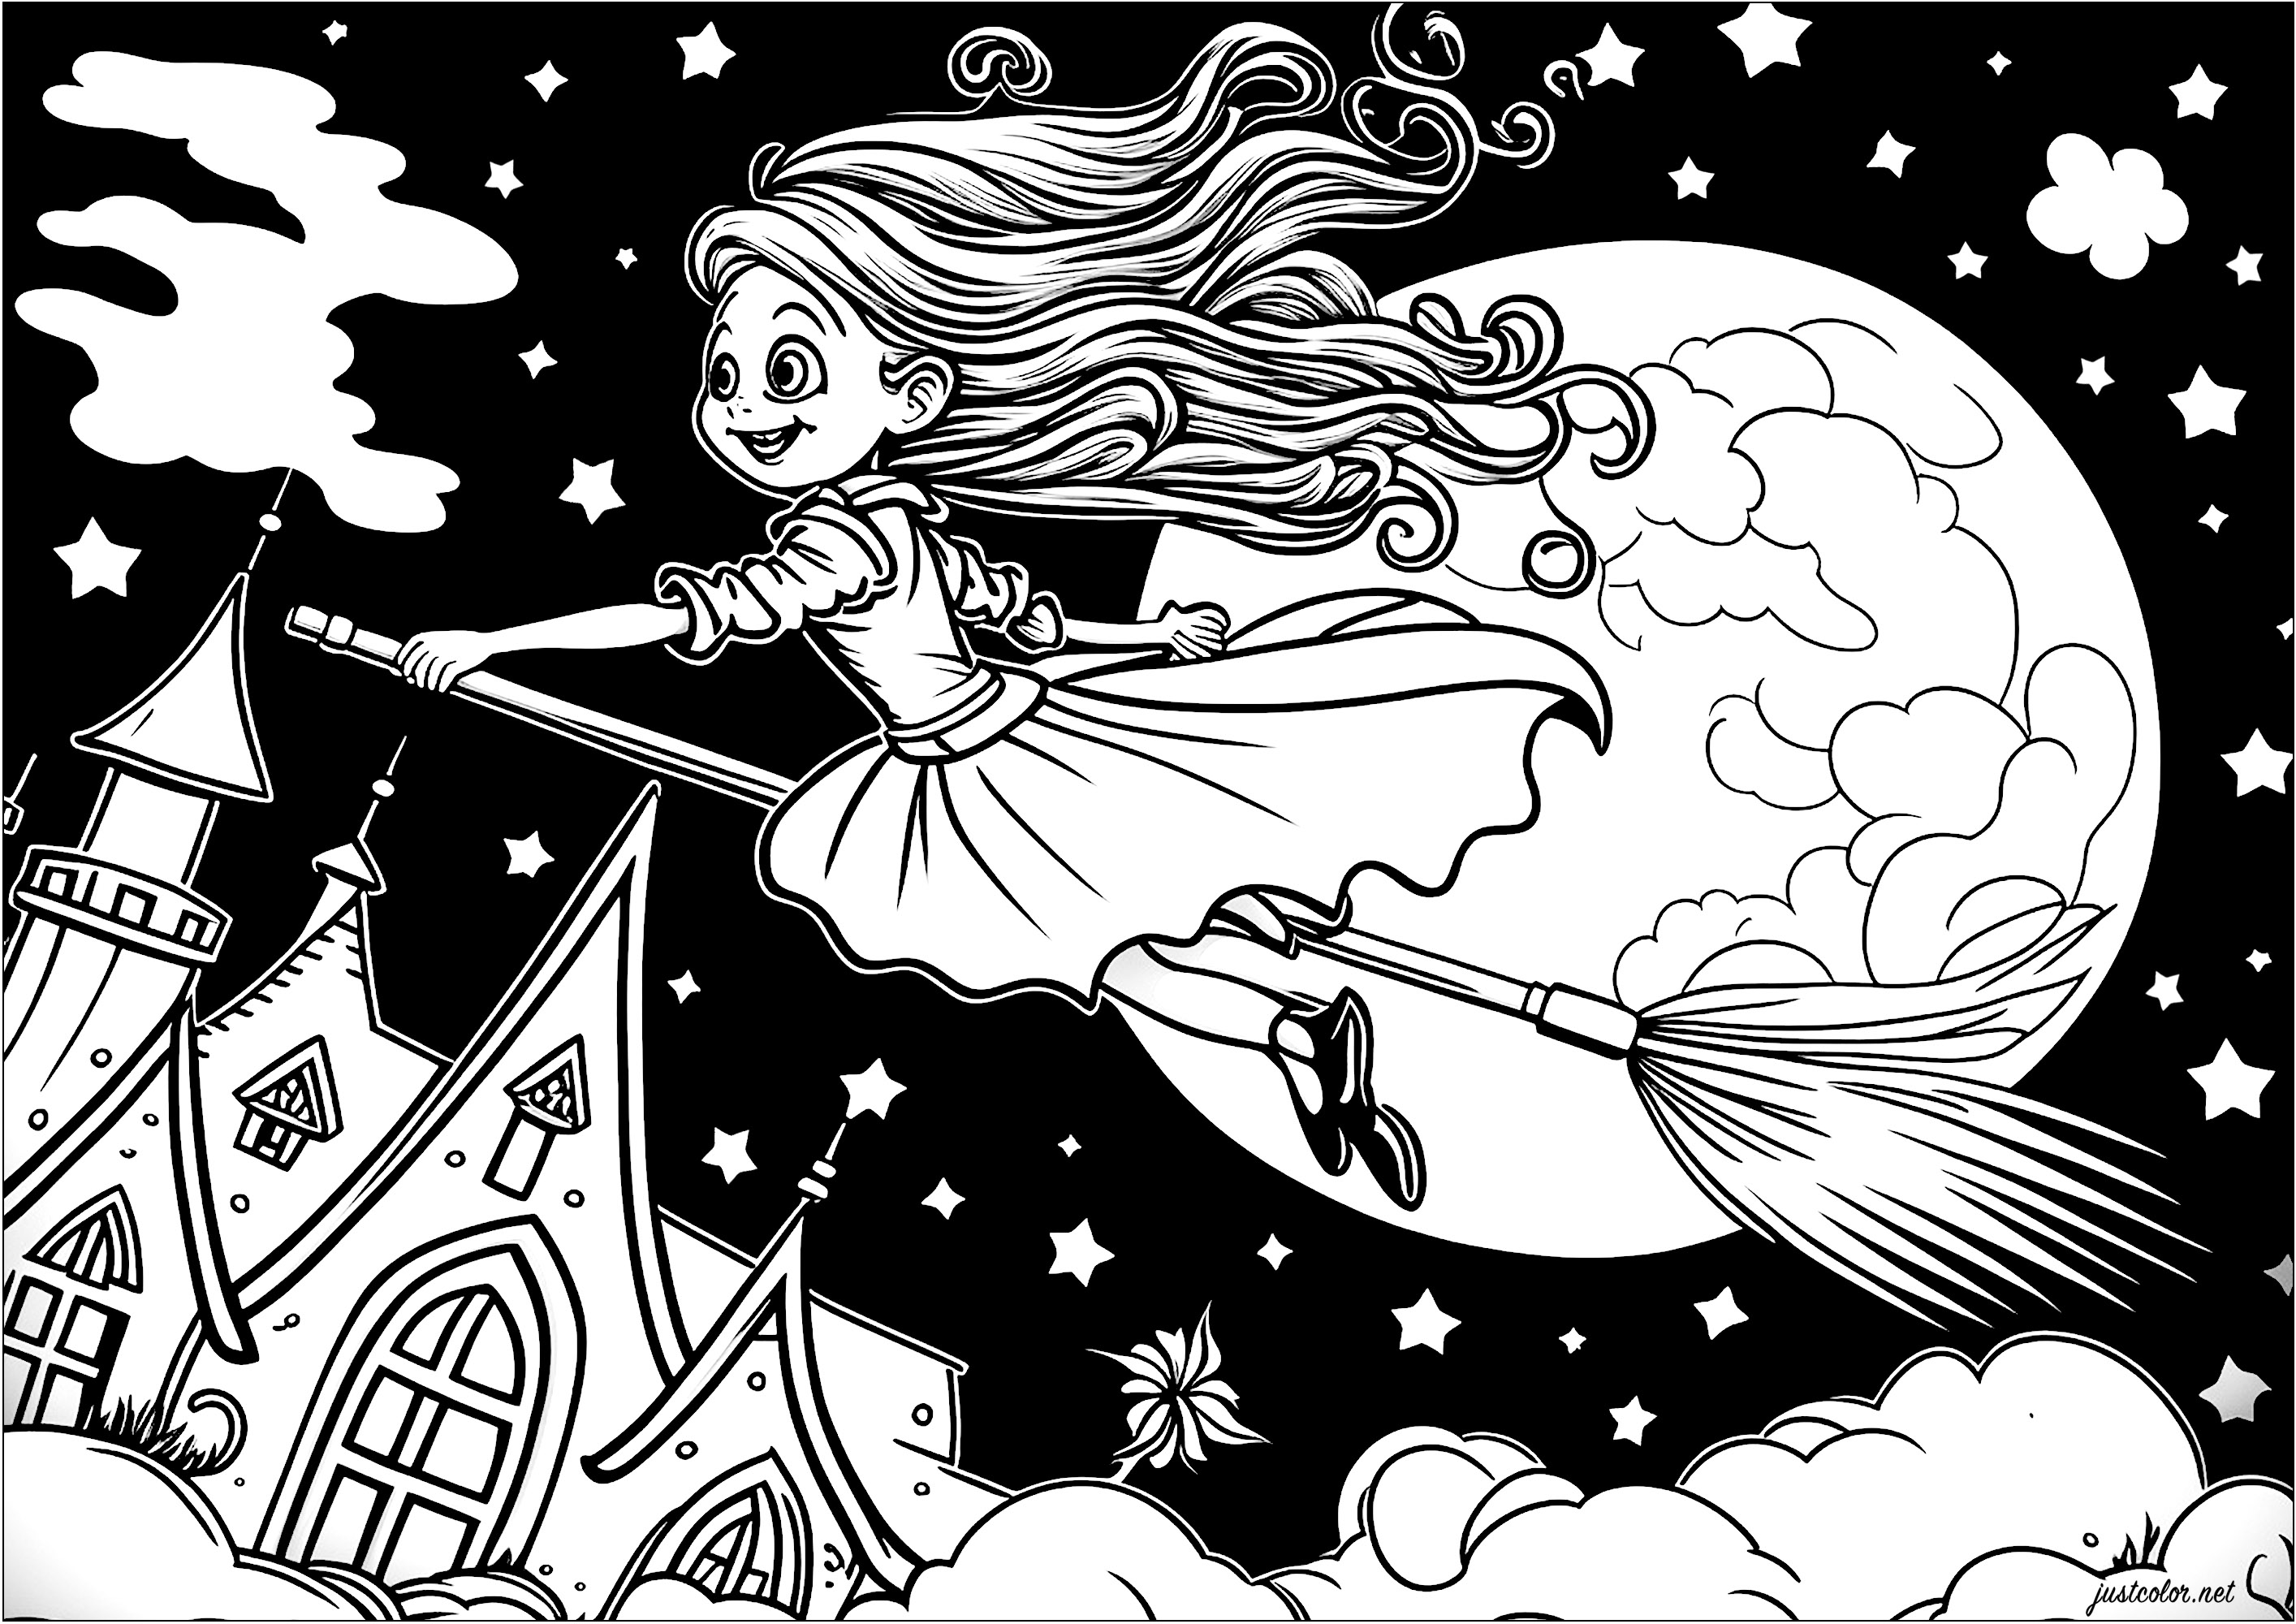 Coloração de uma jovem bruxa a voar na sua vassoura. Aqui está uma bonita bruxa representada na sua vassoura a voar no ar, acima das nuvens. Está vestida com um vestido comprido e elegante e os seus cabelos estão ao vento. A lua está cheia e parece gigante atrás dela.